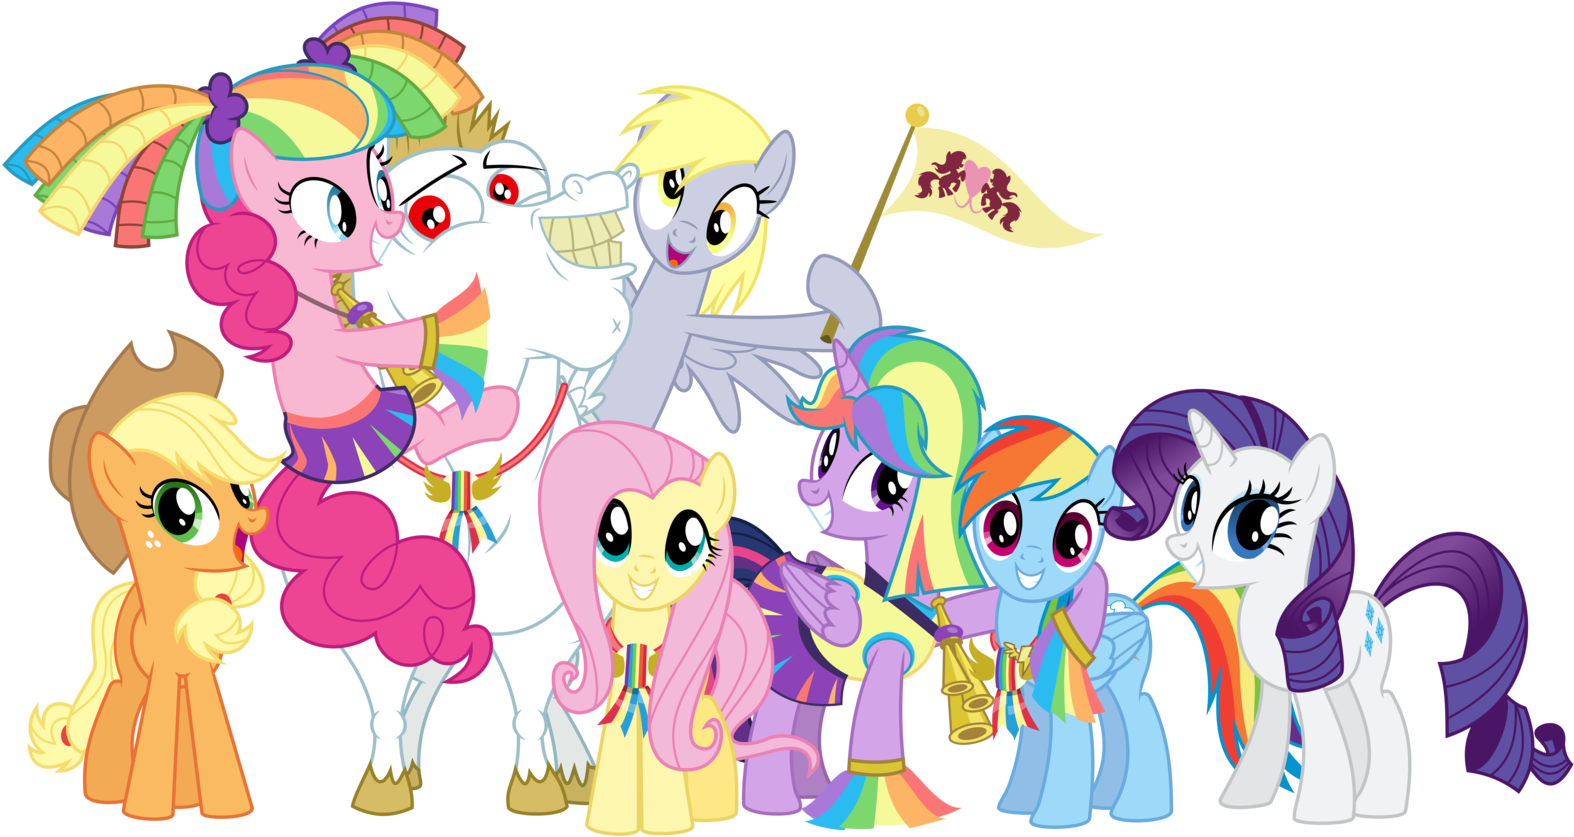 A Winner Is You By Masemj - Little Pony Friendship Is Magic (1600x863)